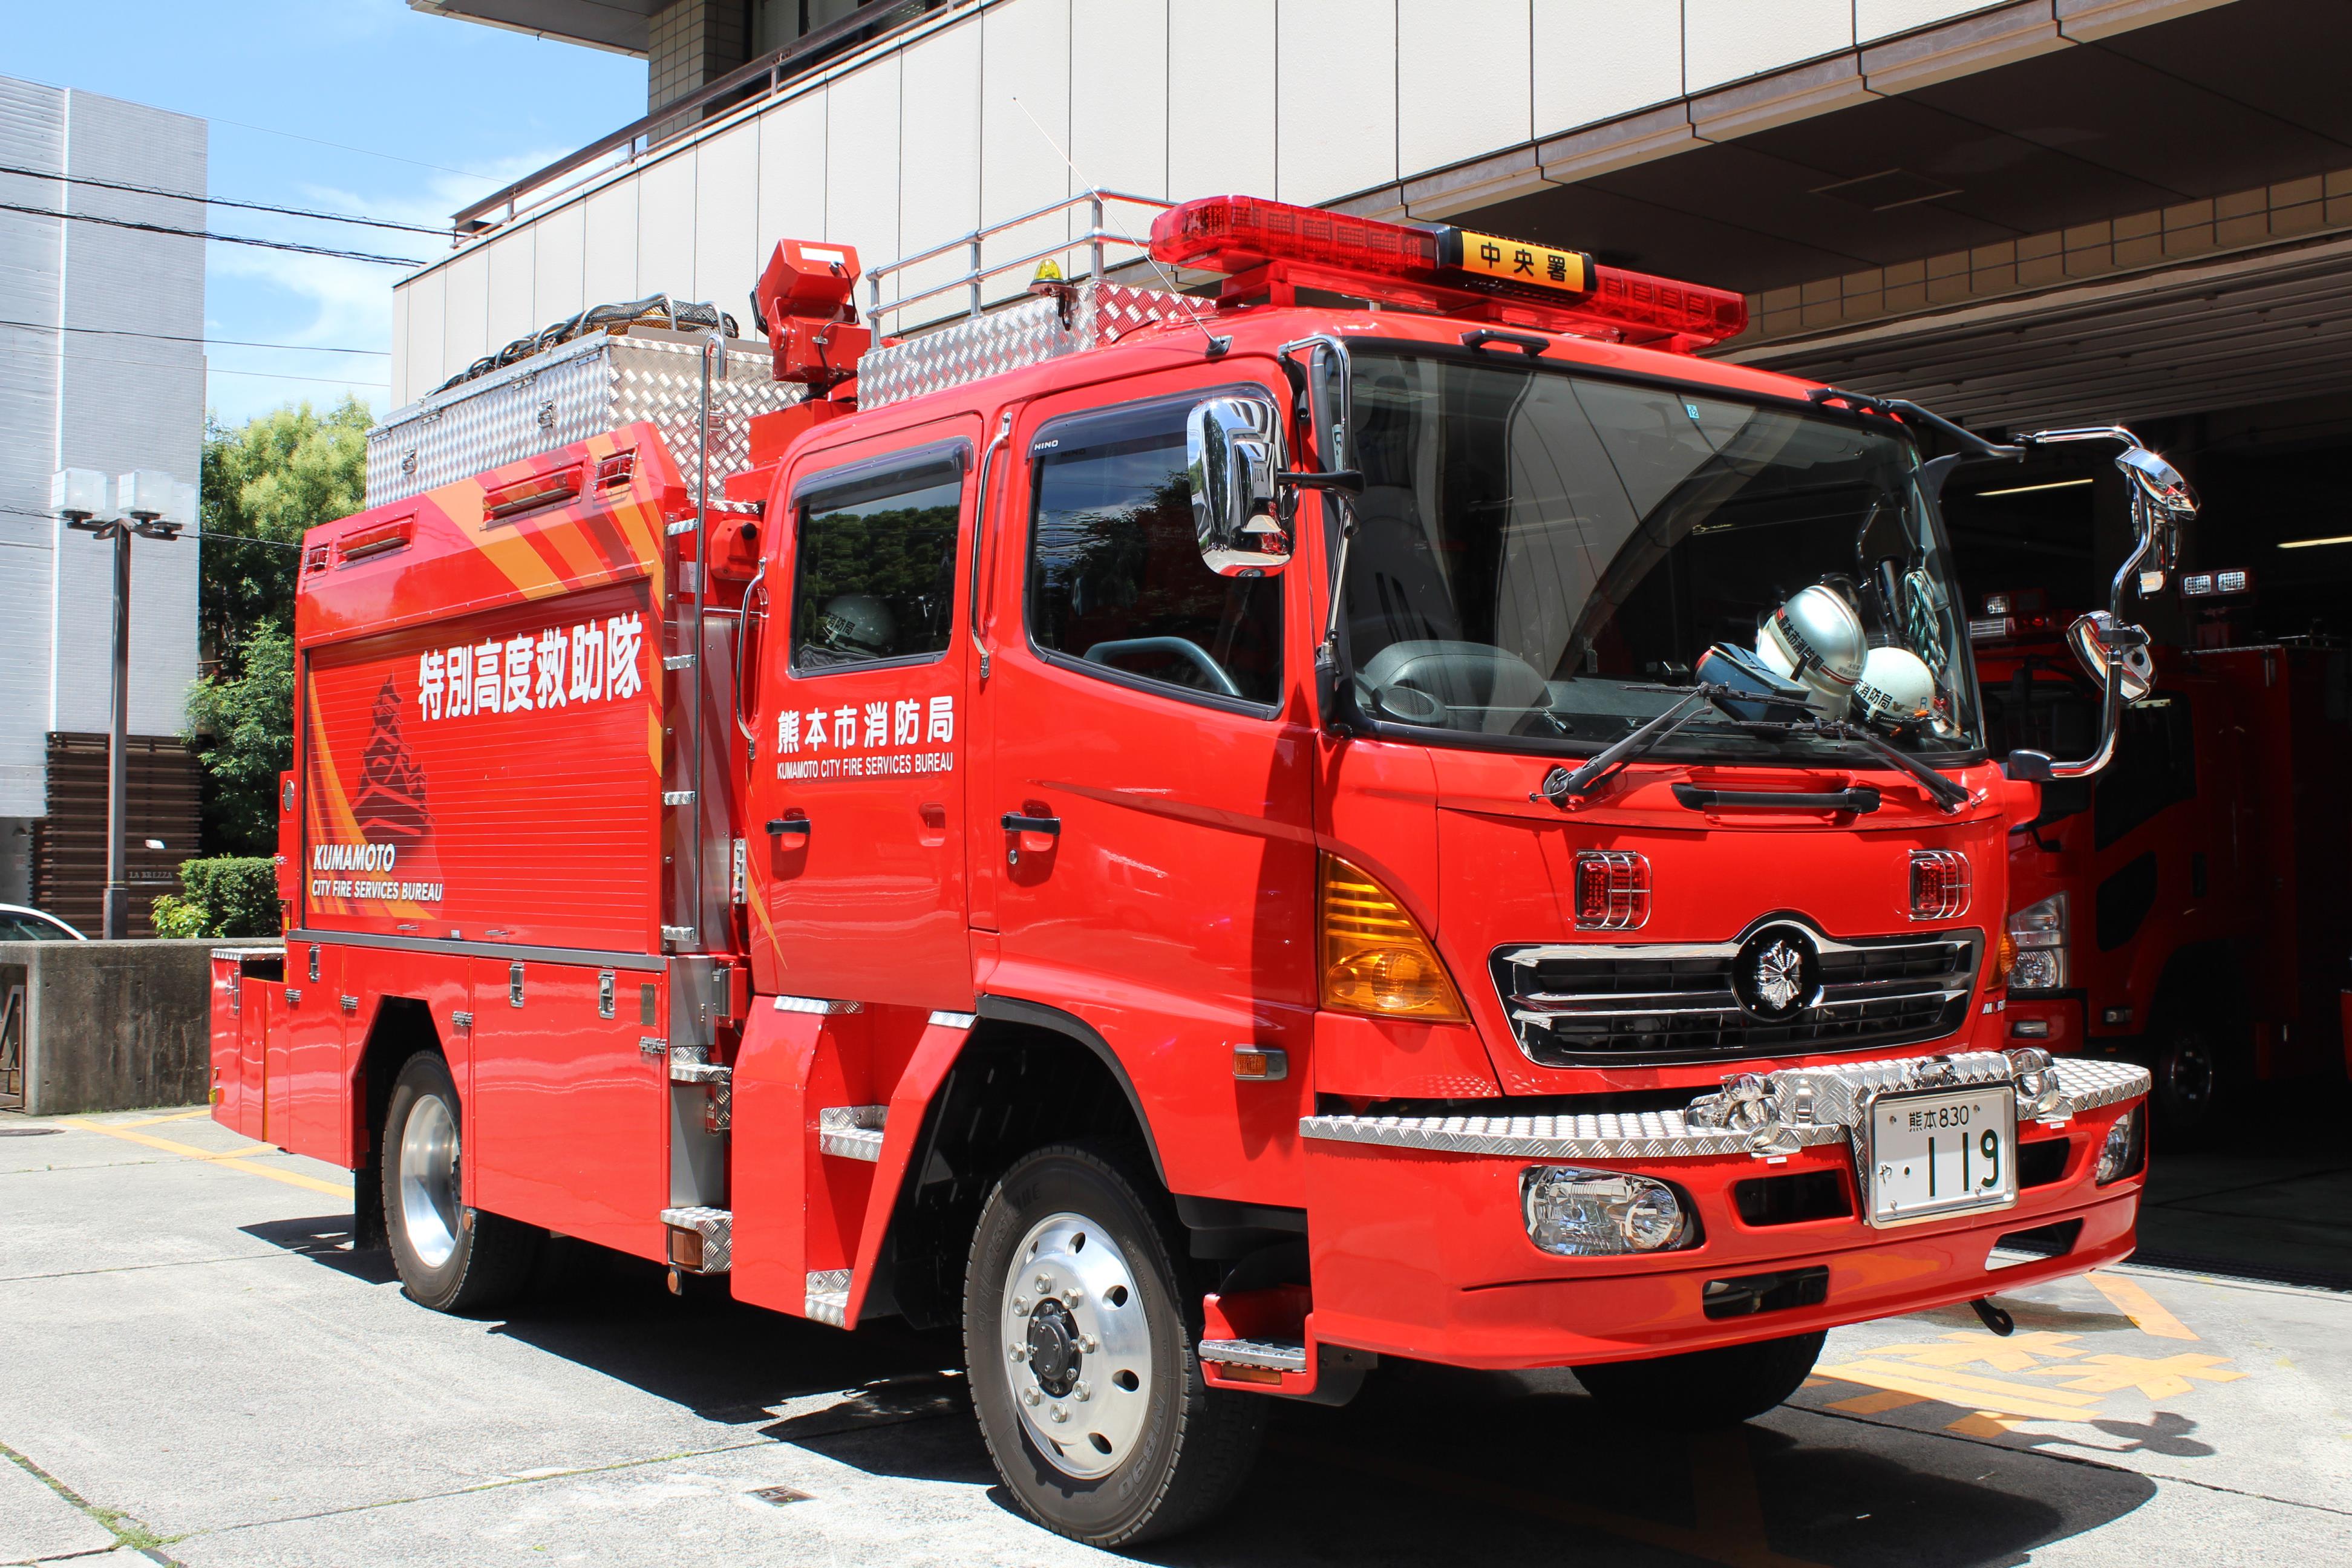 熊本 県 消防 学校